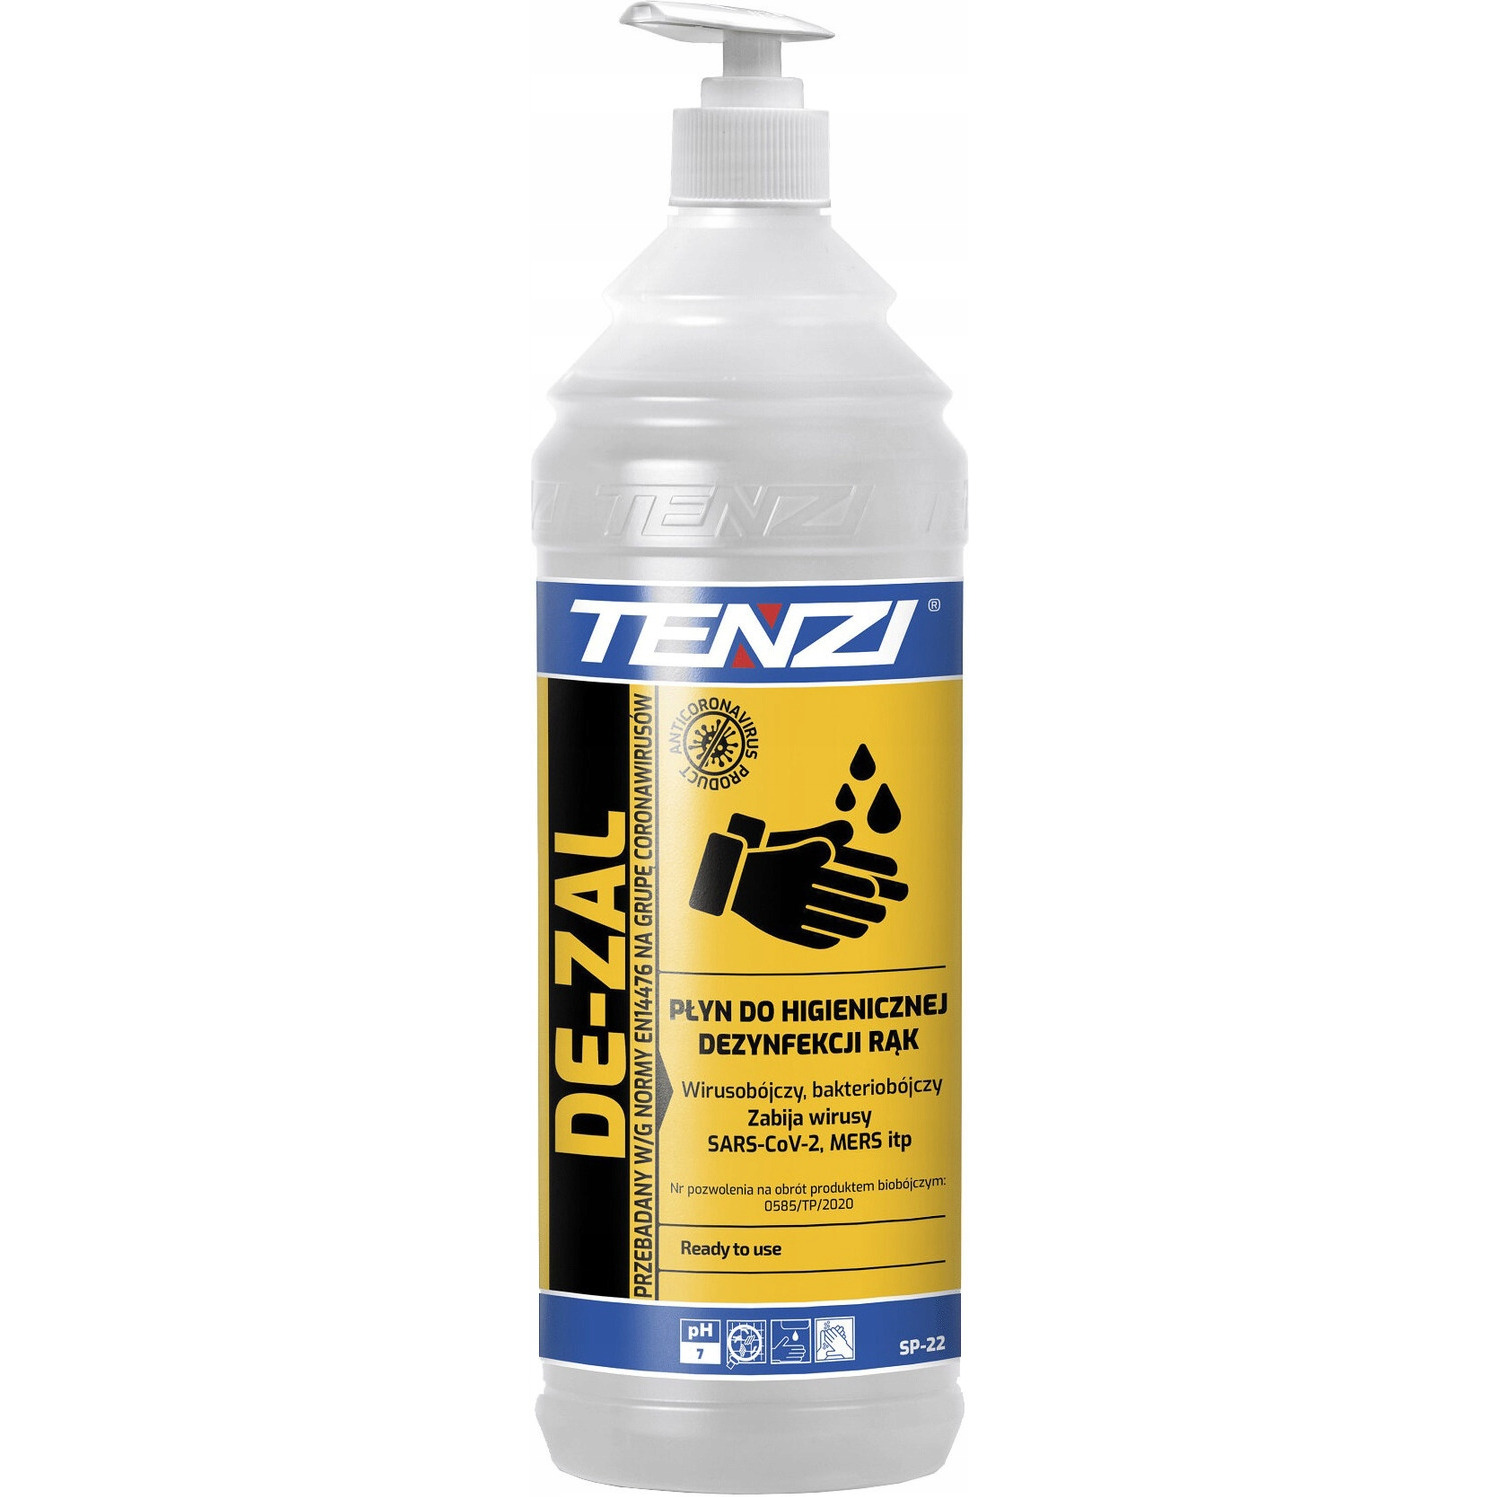 Płyn TENZI DE-ZAL do higienicznej dezynfekcji rąk 1l. (SP-22/001), hp 0106180